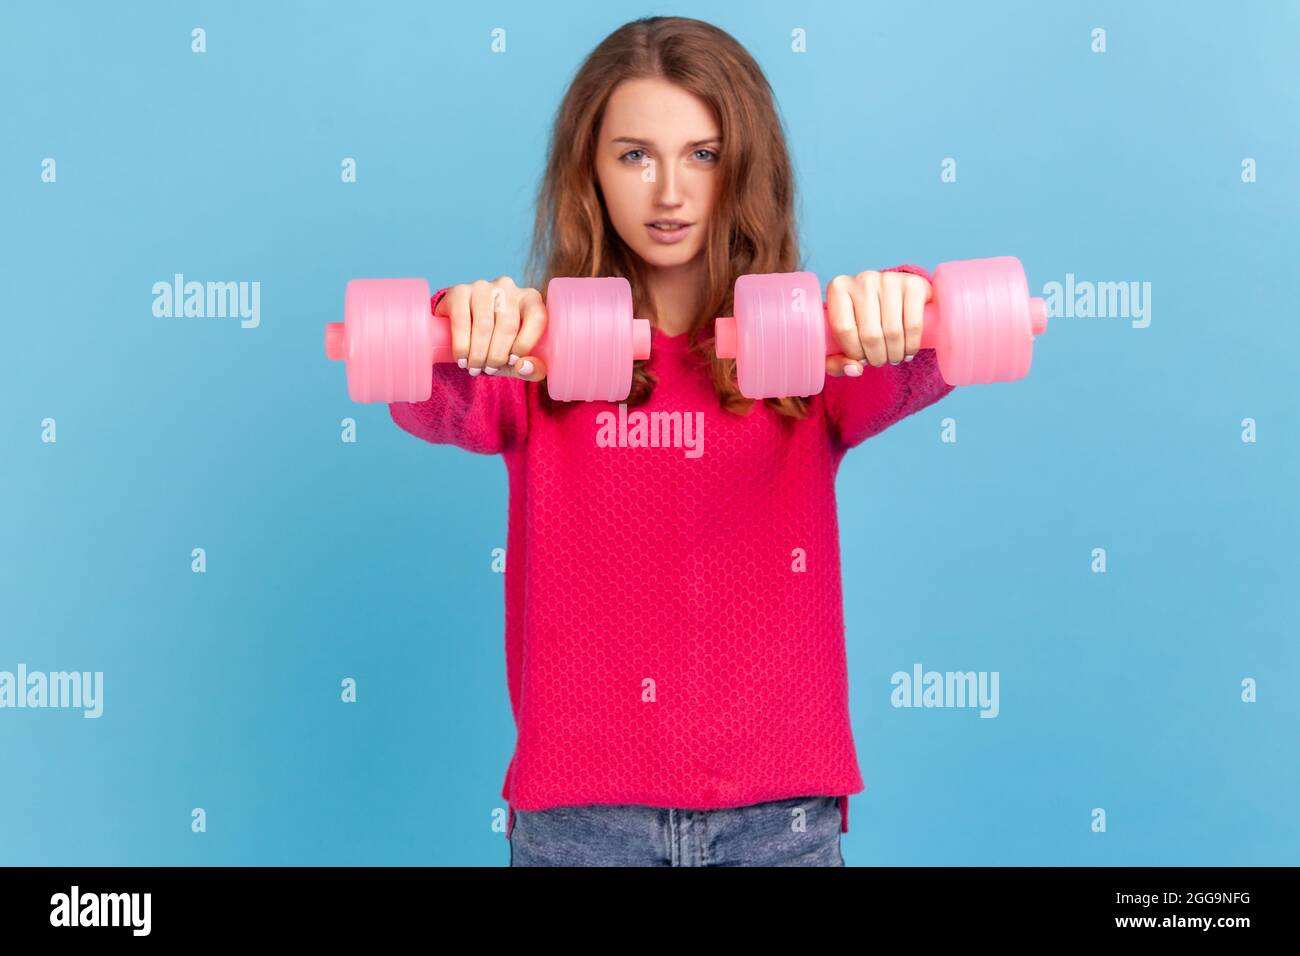 Eine winsige, selbstbewusste Frau mit welligem Haar, die einen rosa Pullover trägt und zwei Hanteln aushält, die Kamera anschaut und ihren Bizeps trainiert. Studio im Innenbereich Stockfoto